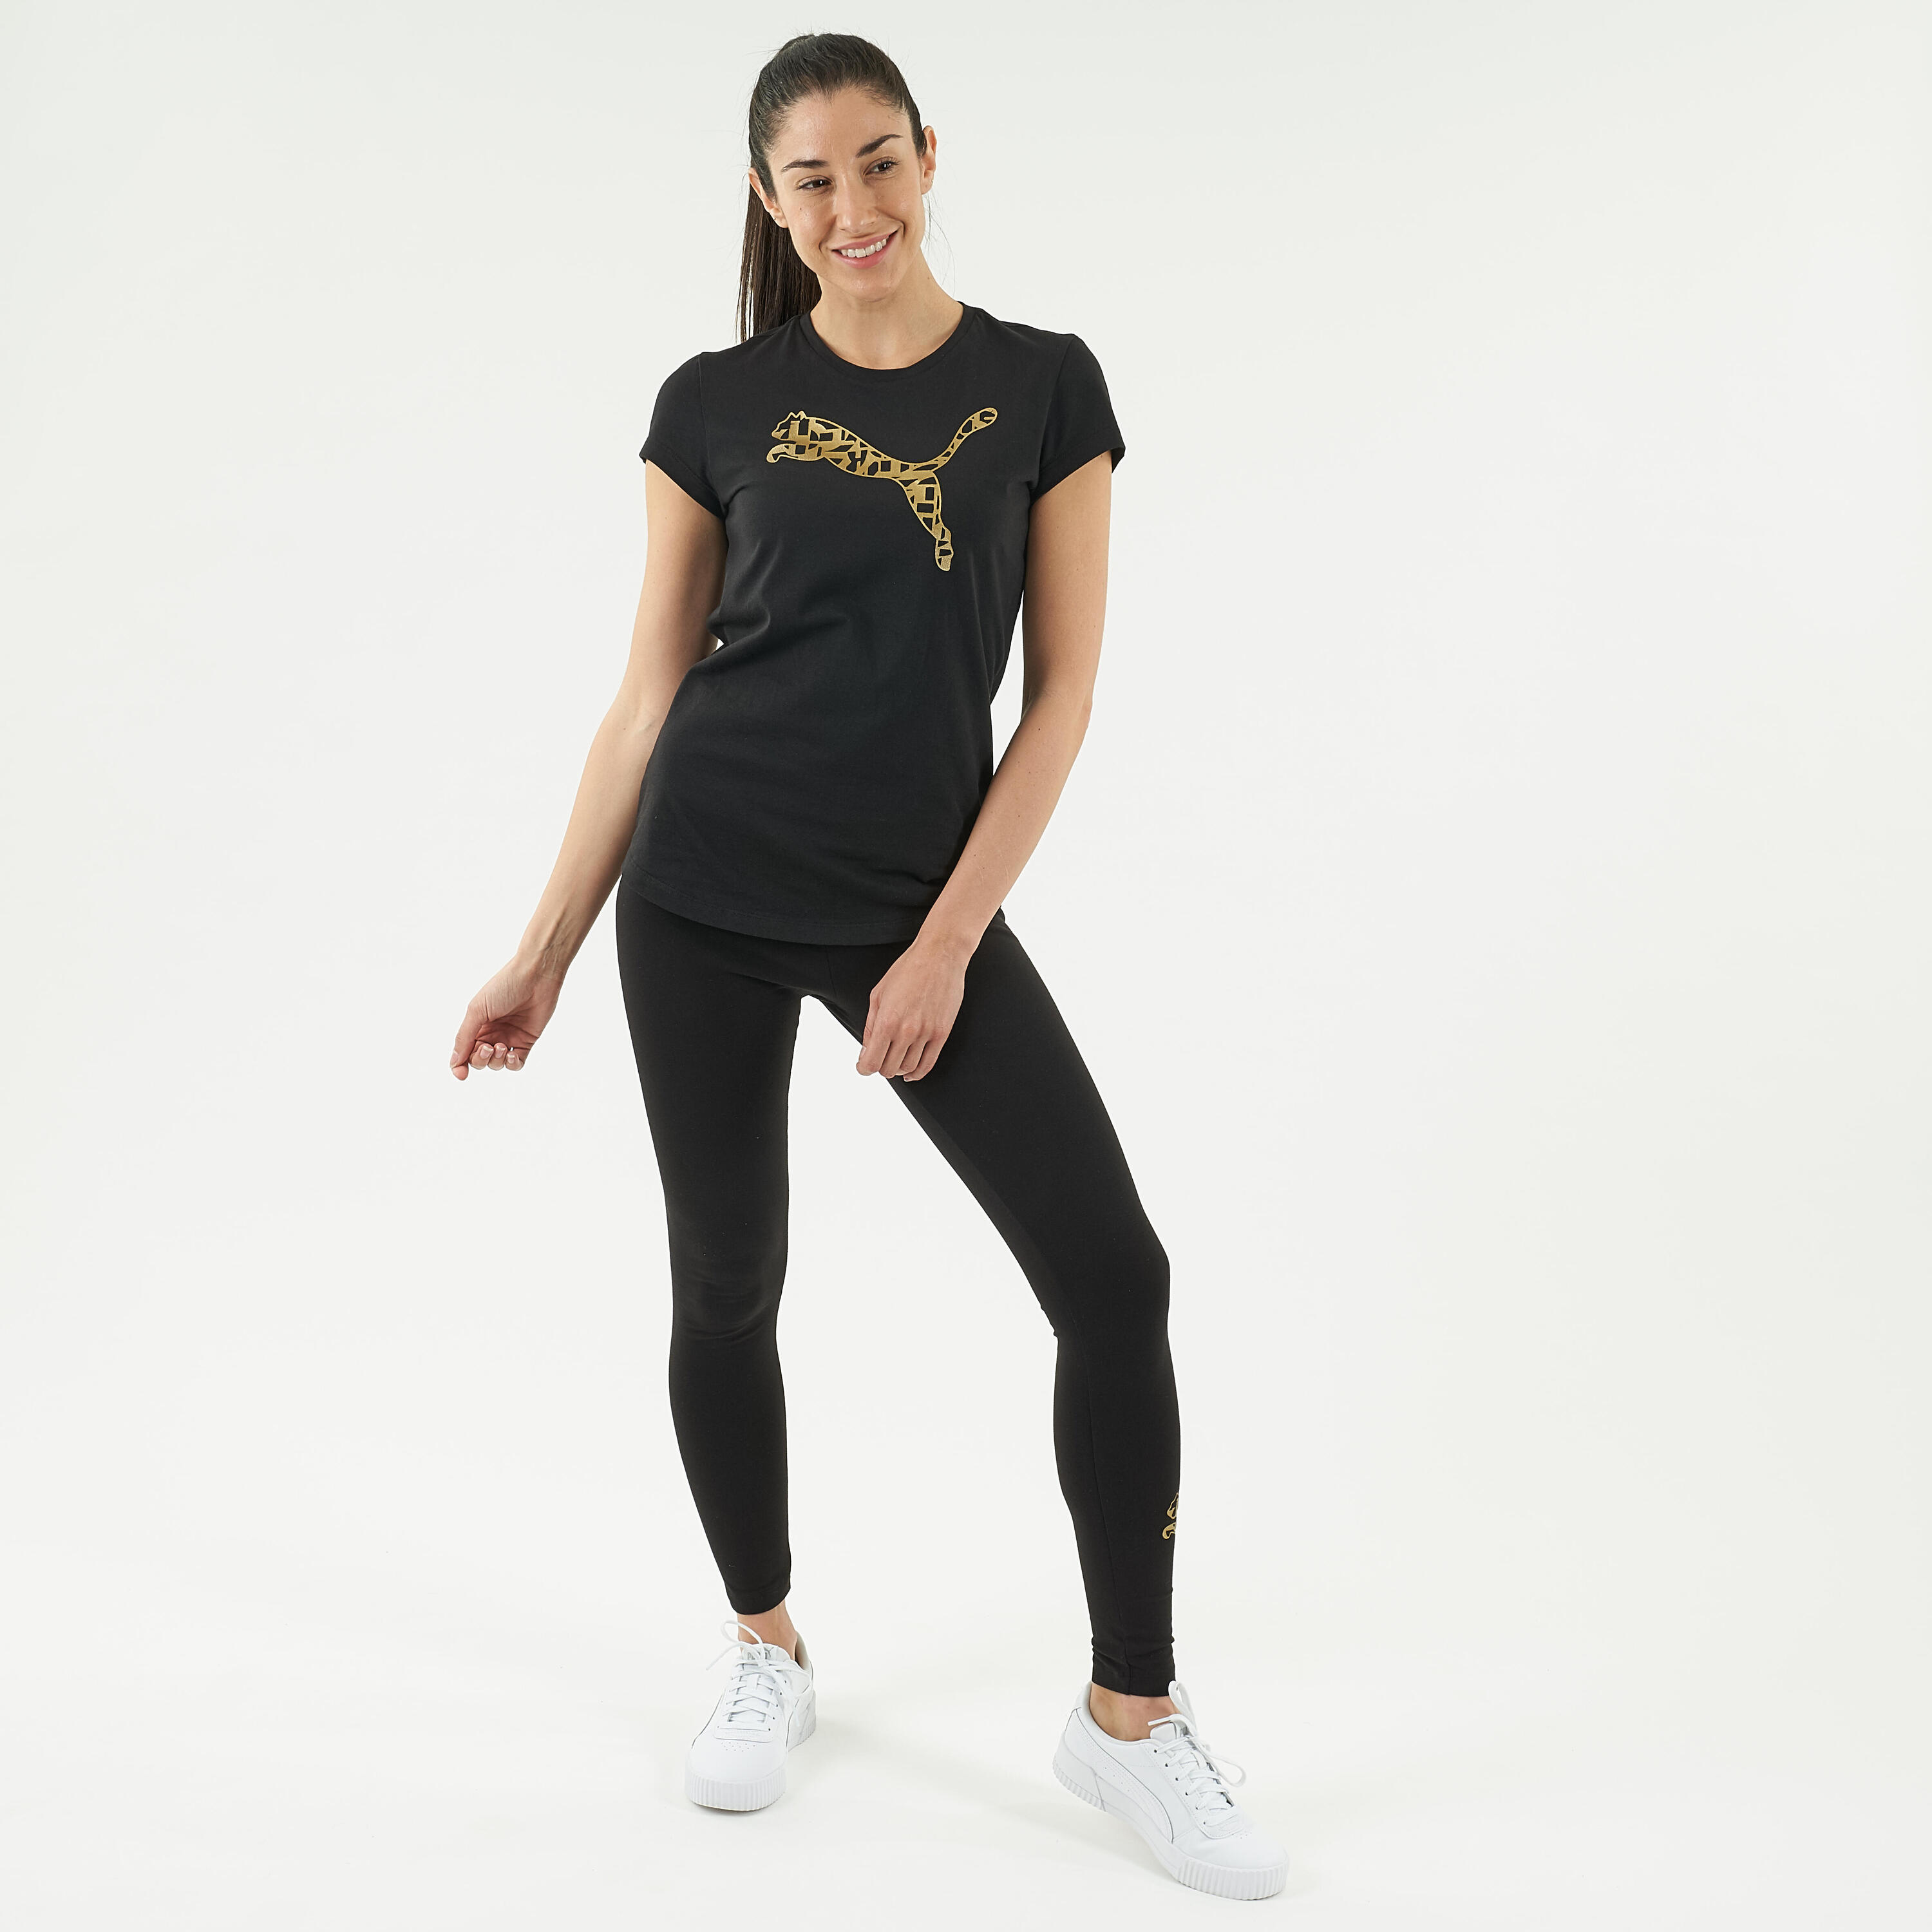 Cotton Fitness Leggings - Black/Gold Logo 3/7